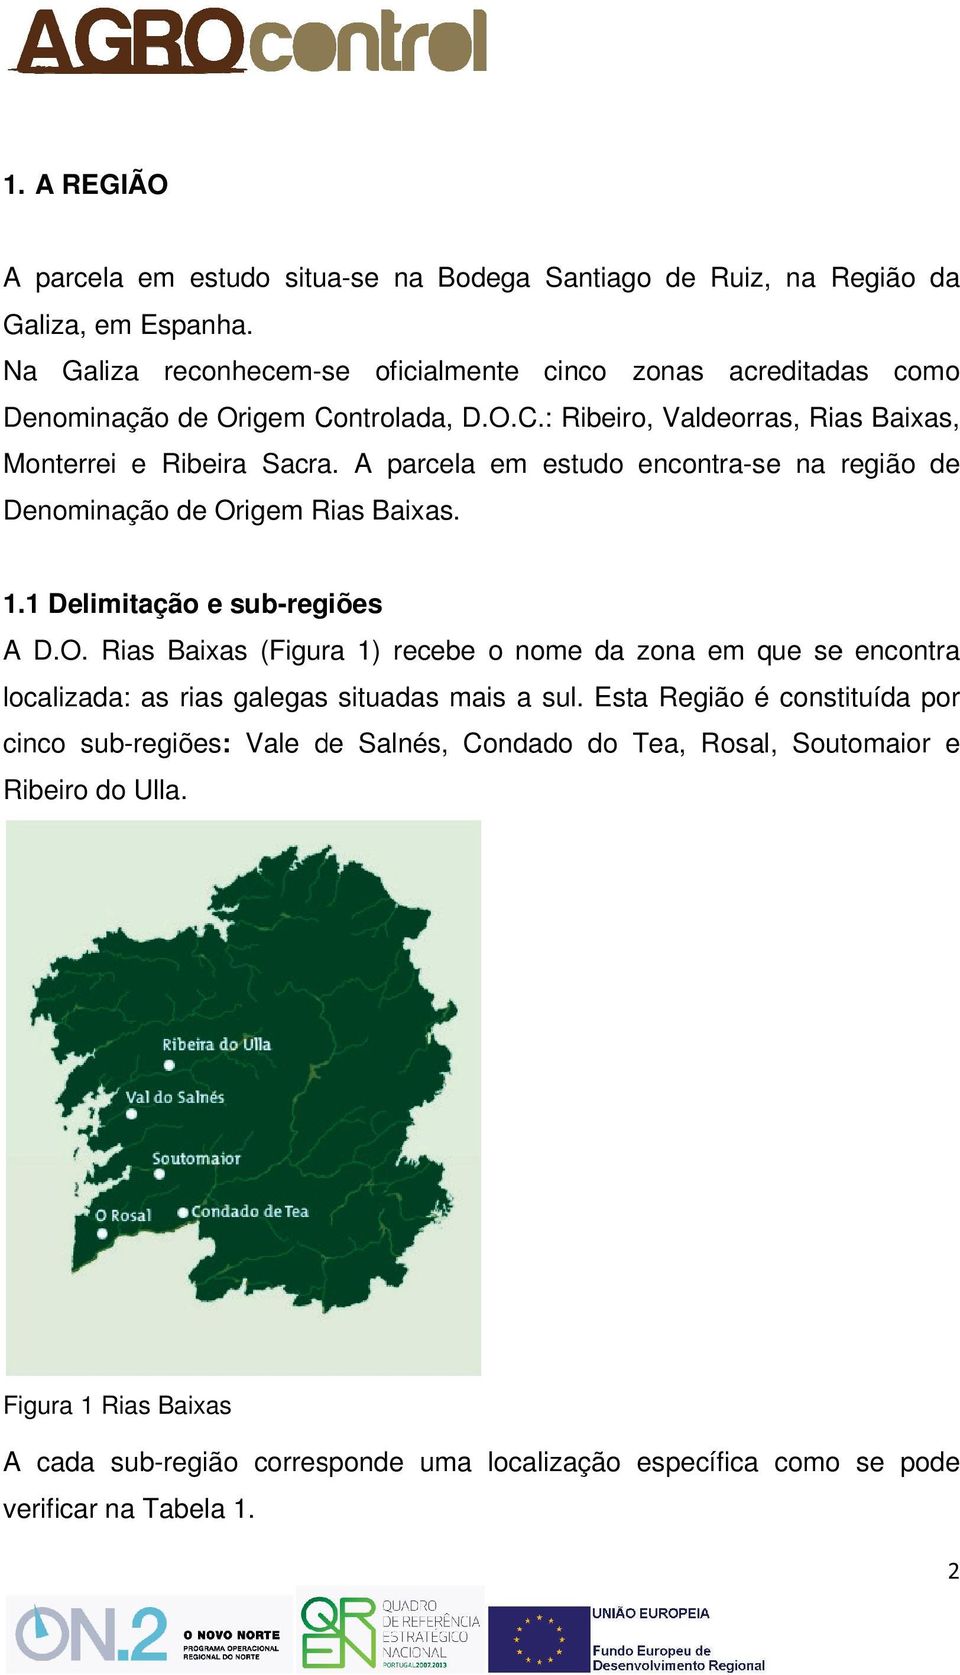 A parcela em estudo encontra-se na região de Denominação de Origem Rias Baixas. 1.1 Delimitação e sub-regiões A D.O. Rias Baixas (Figura 1) recebe o nome da zona em que se encontra localizada: as rias galegas situadas mais a sul.